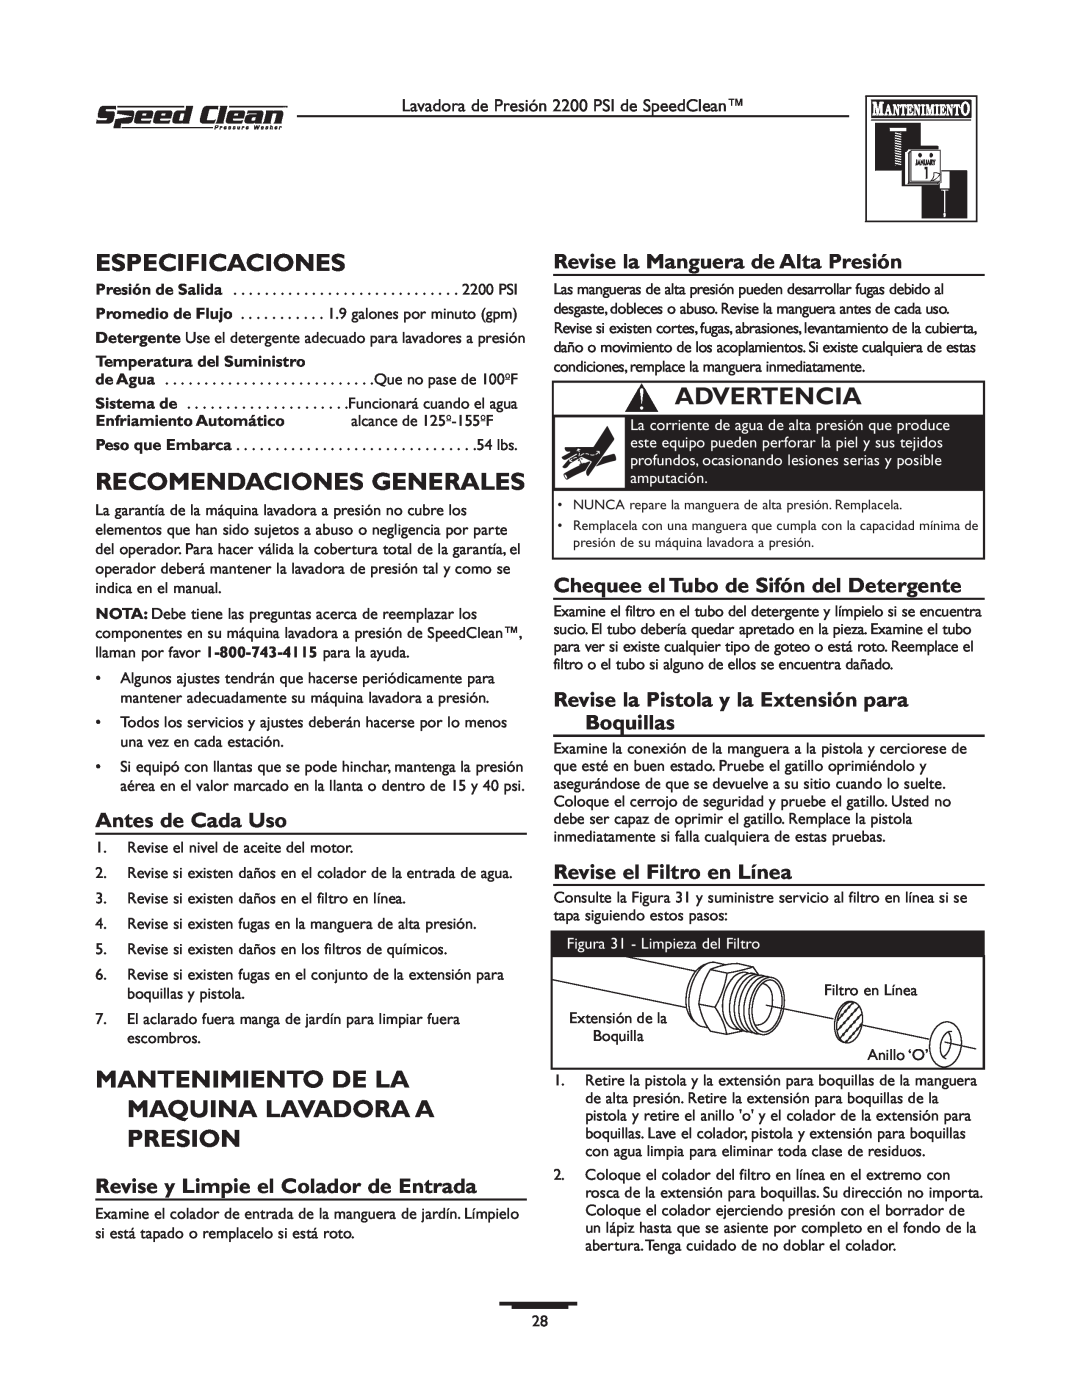 Briggs & Stratton 020239-1 Especificaciones, Recomendaciones Generales, Mantenimiento De La Maquina Lavadora A Presion 